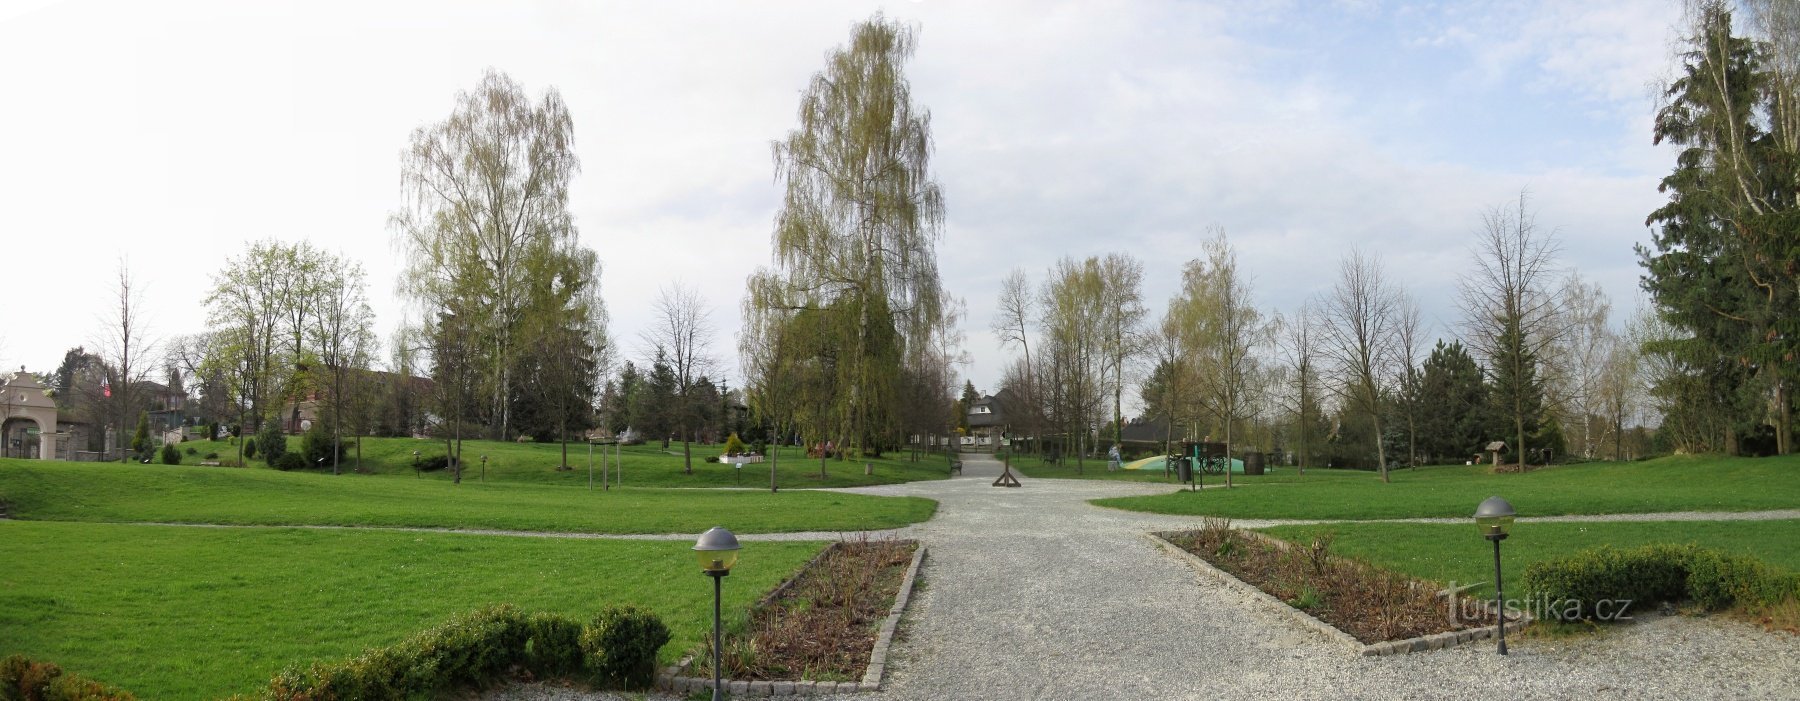 Kunice - Berchtold slott, en park med miniatyrslott och en utbildningsstig